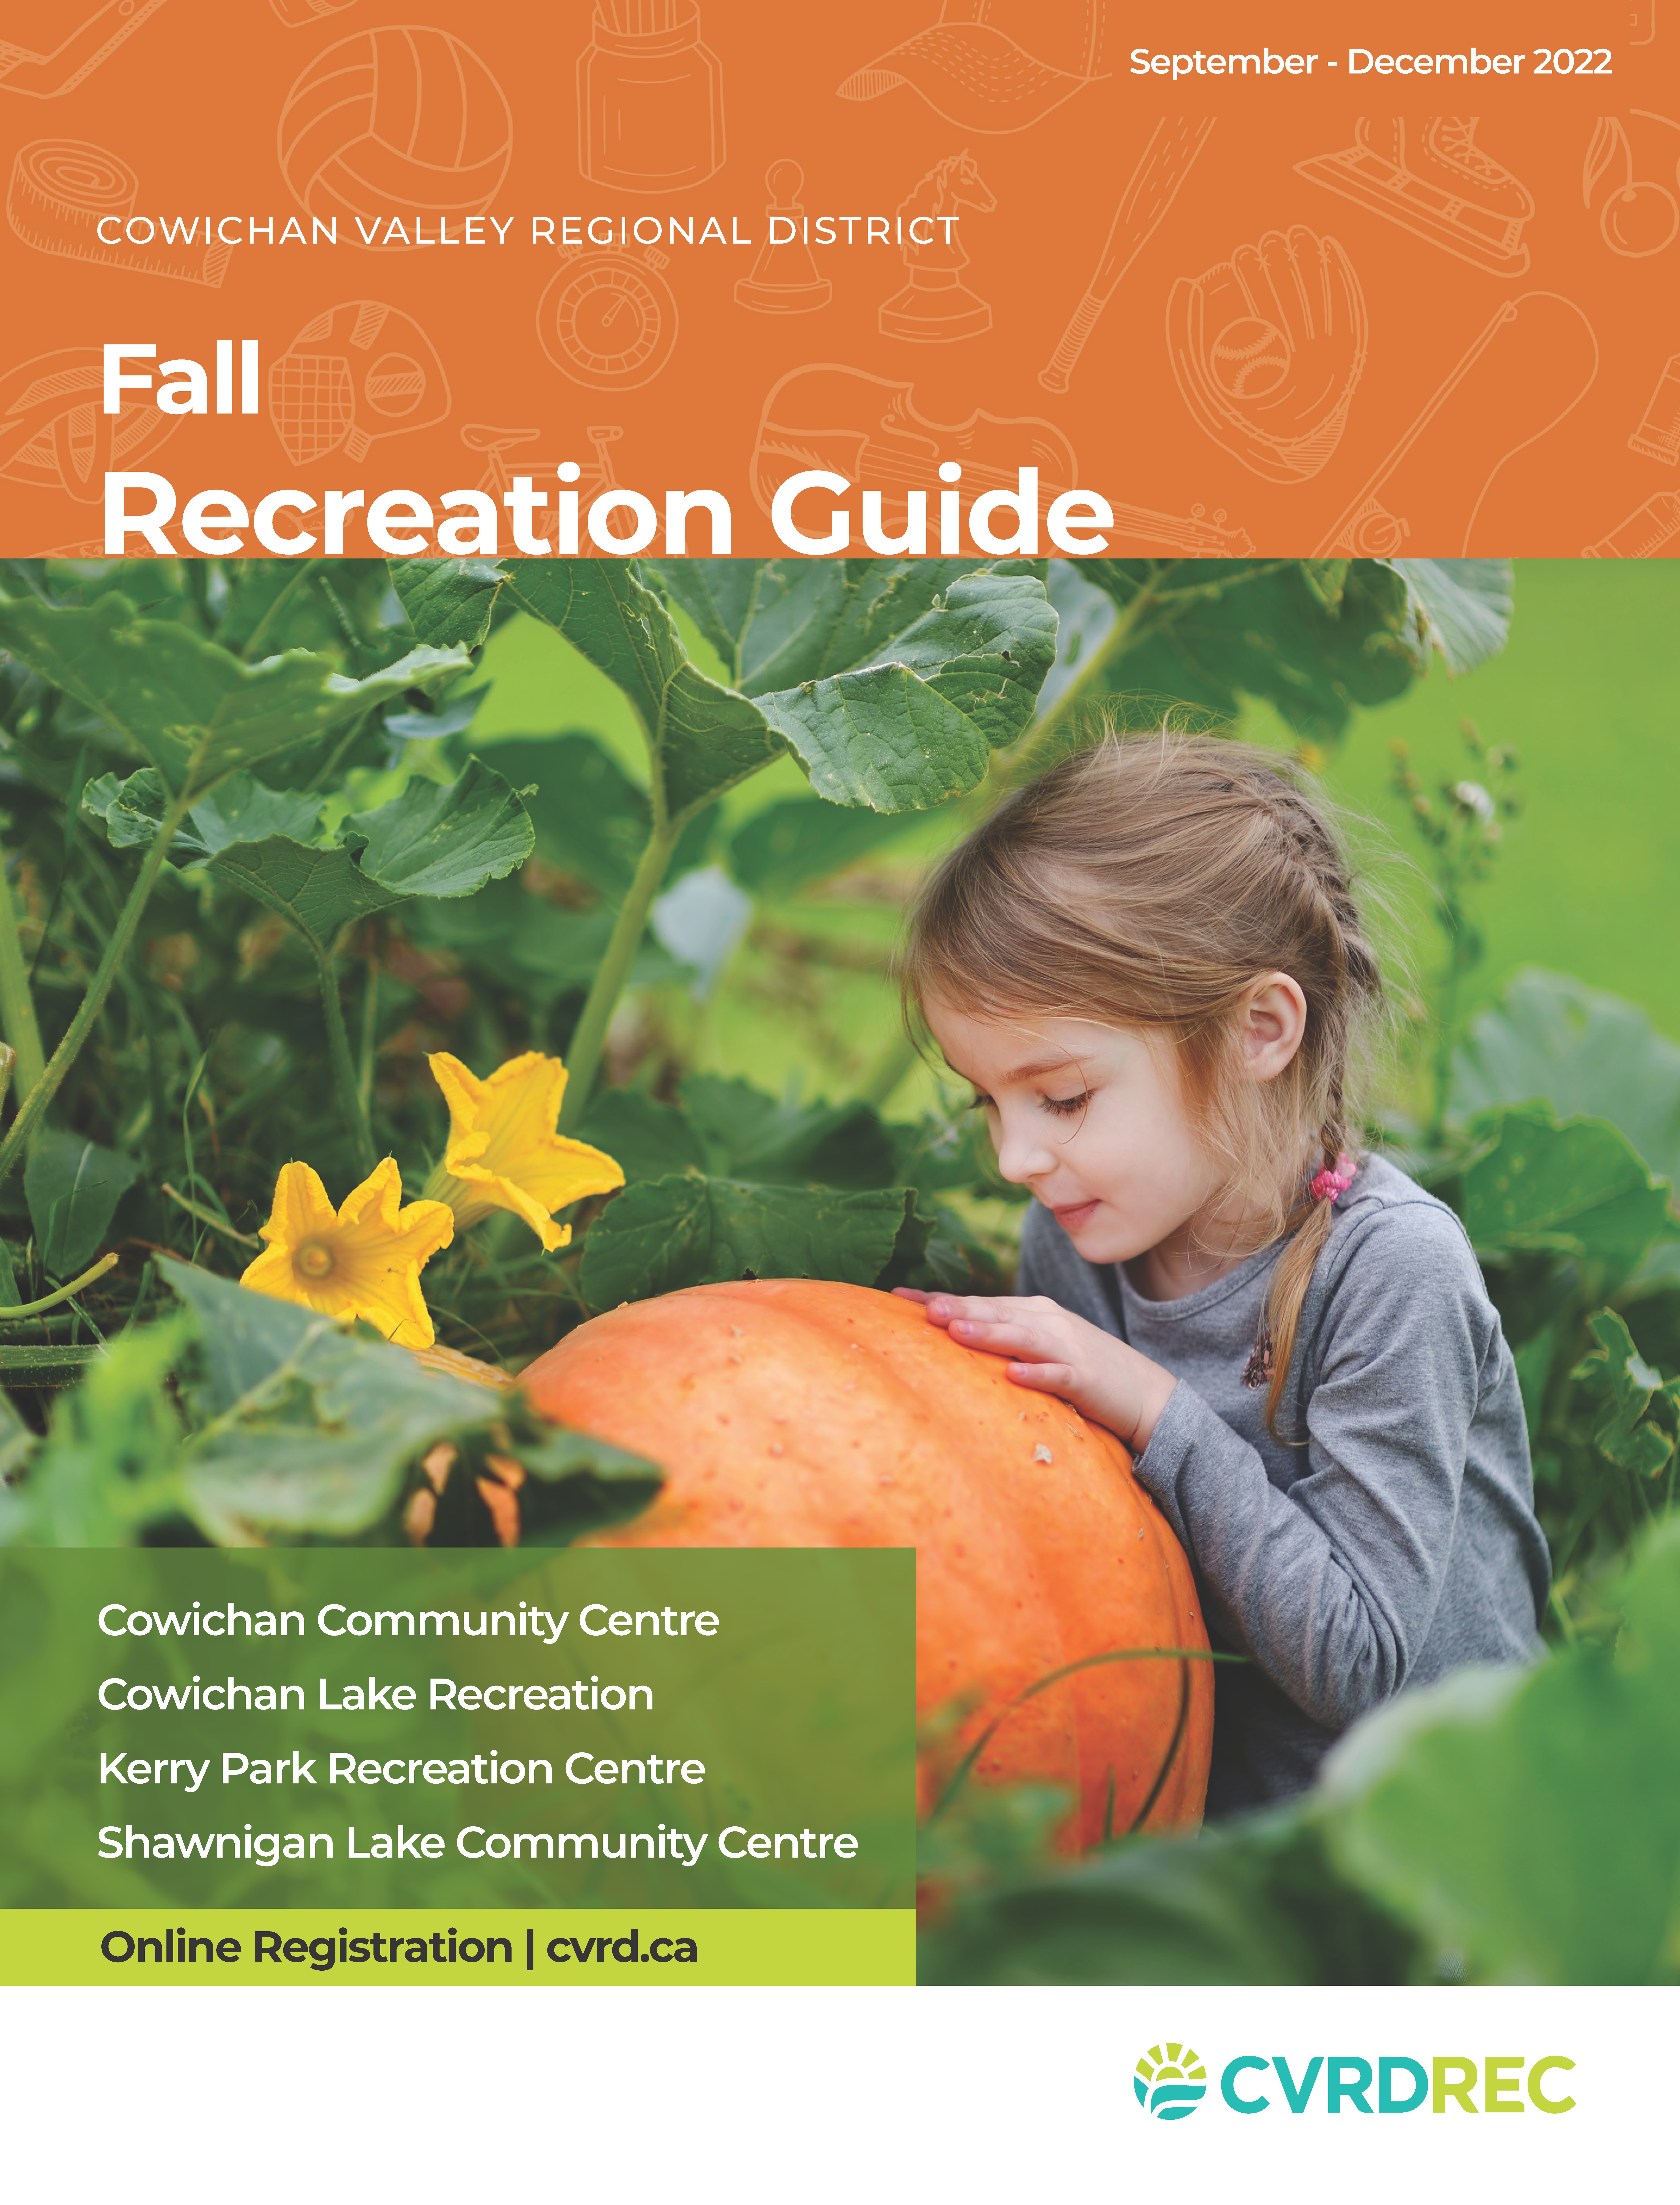 CVRD - Recreation Guide